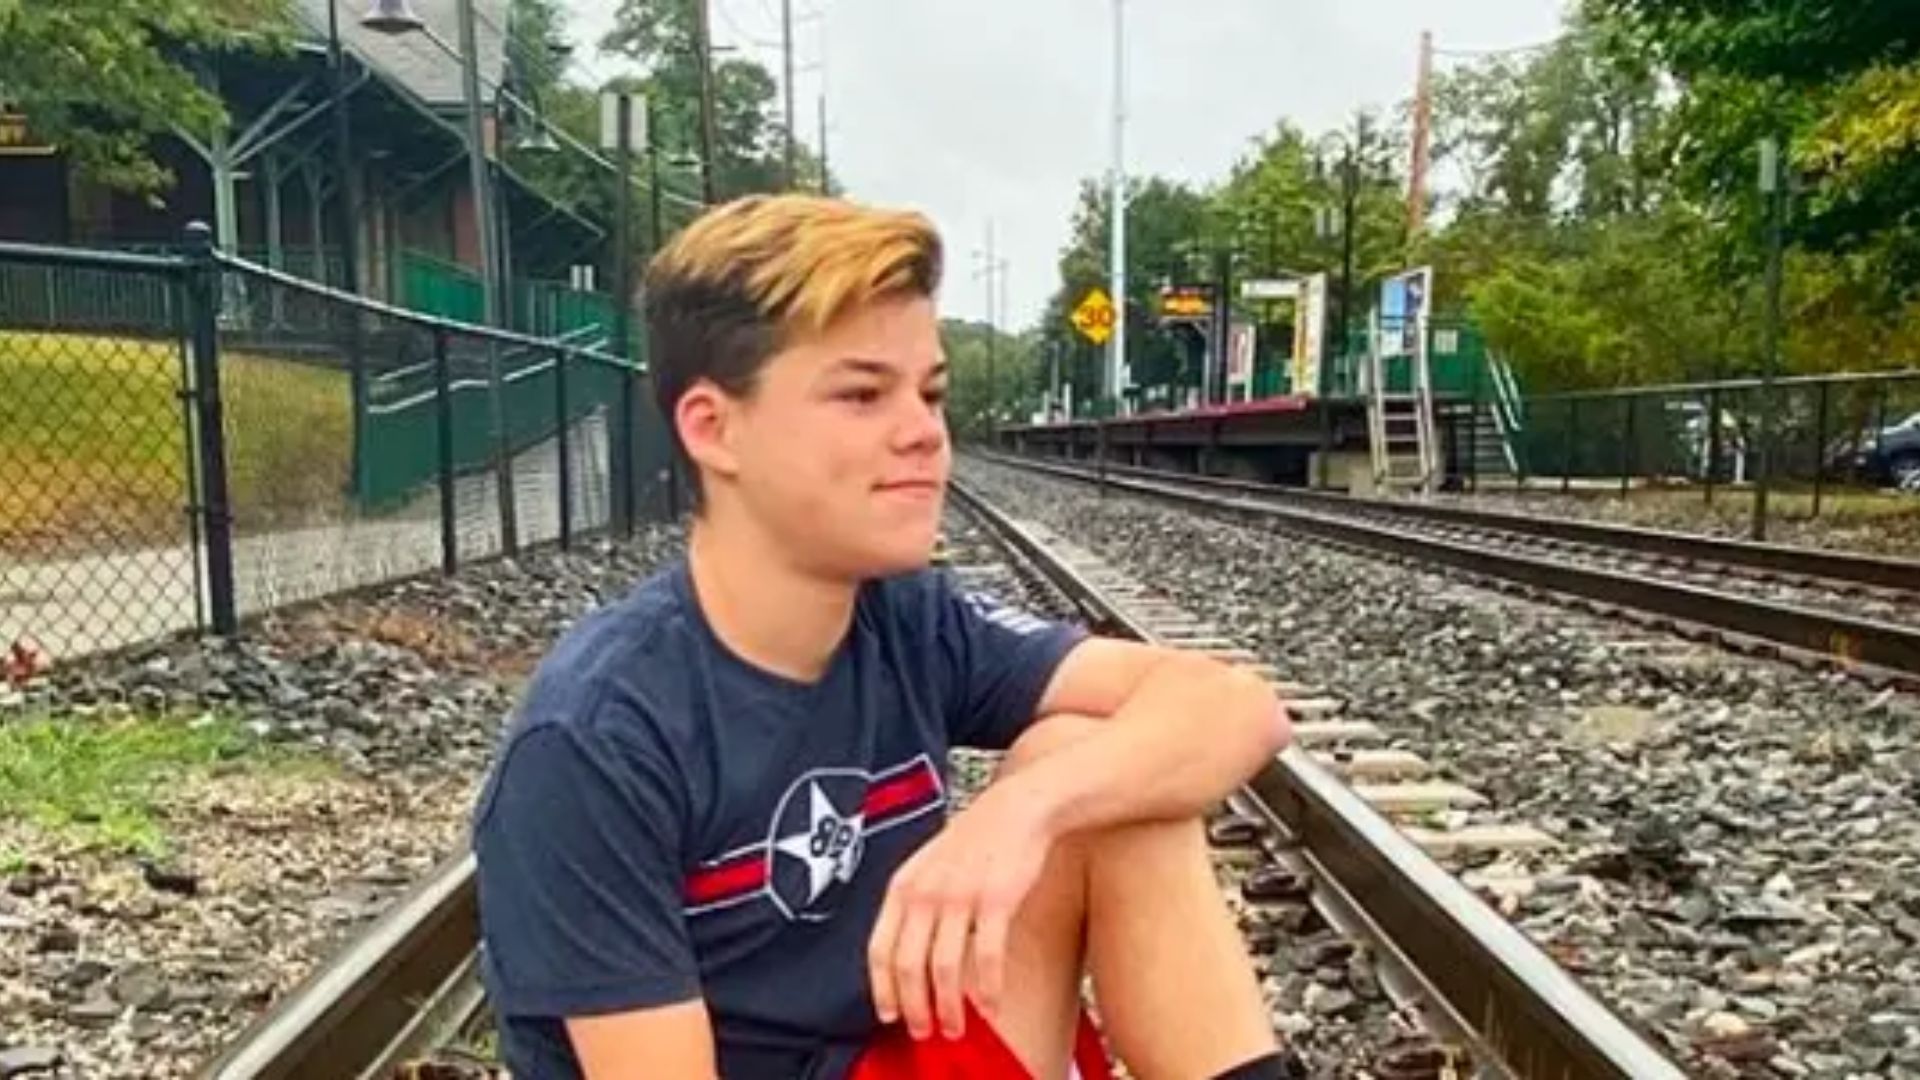 Jack Doherty Sitting On Railway Track